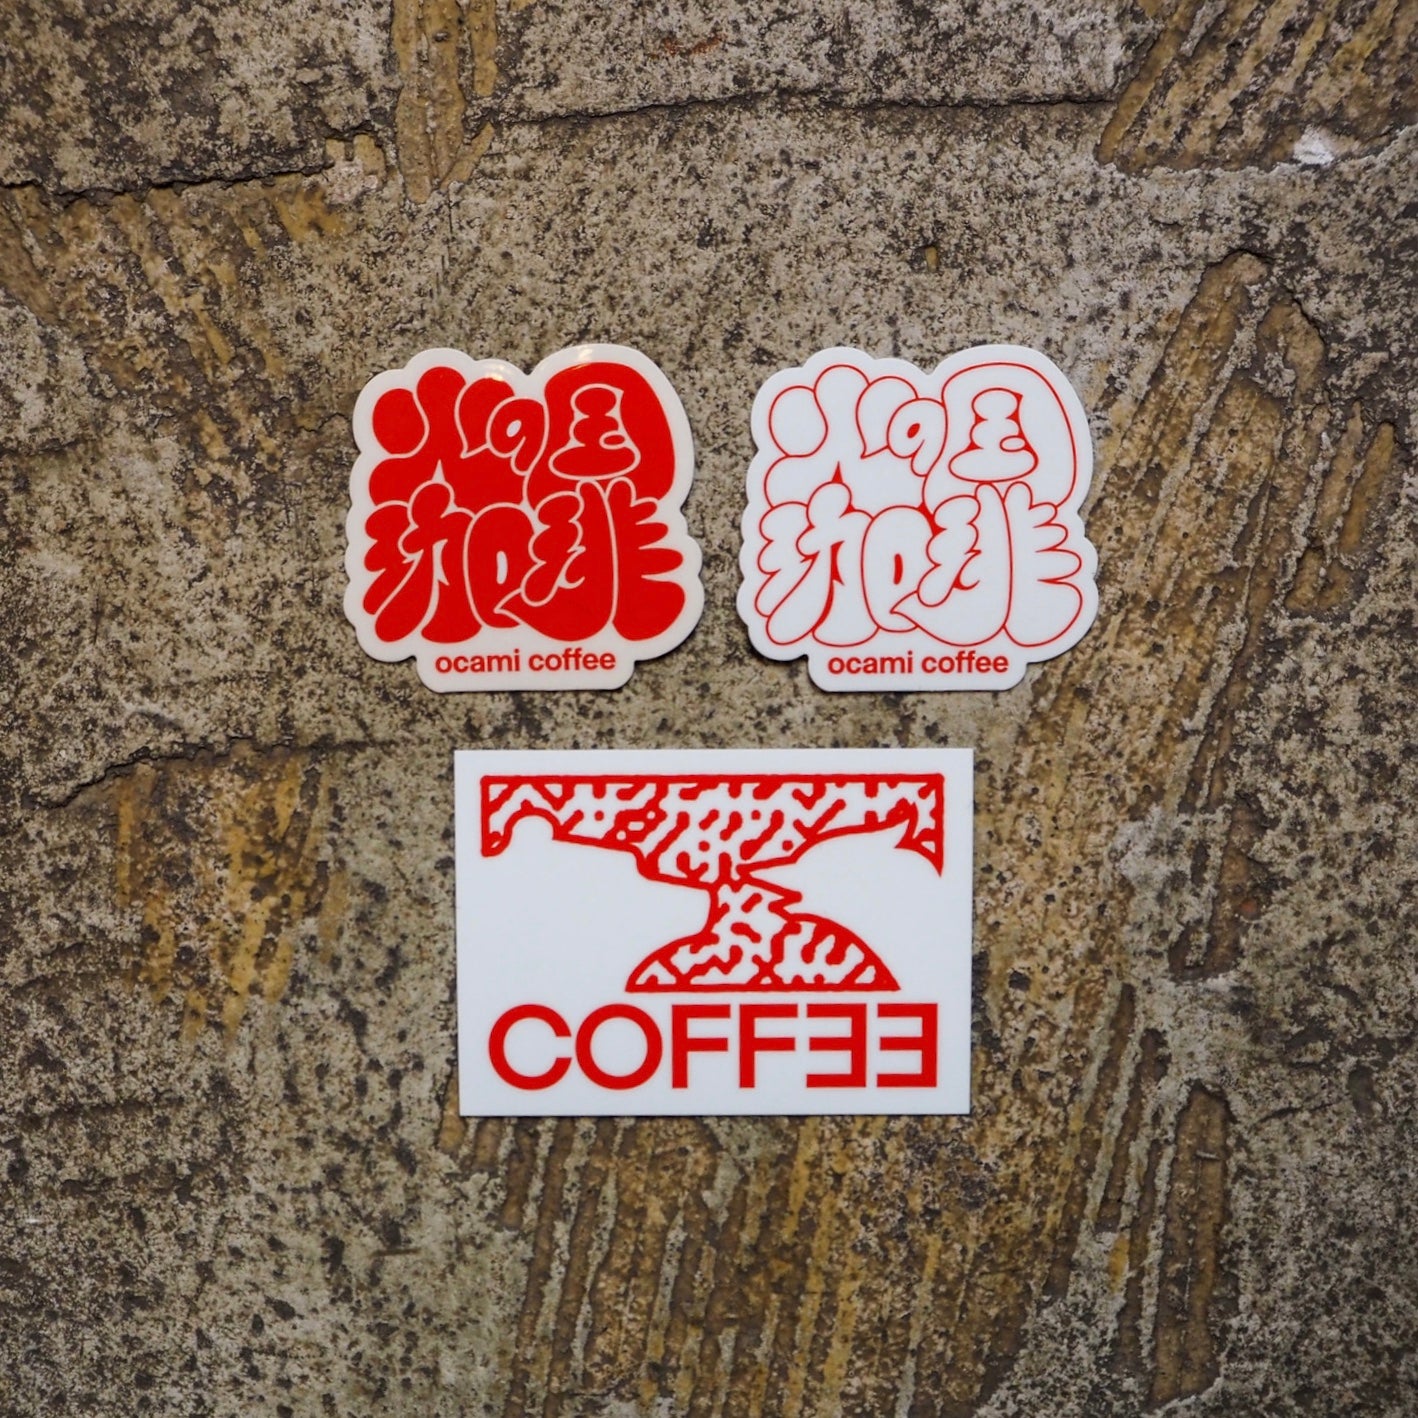 "火の国珈琲" sticker 3packs set